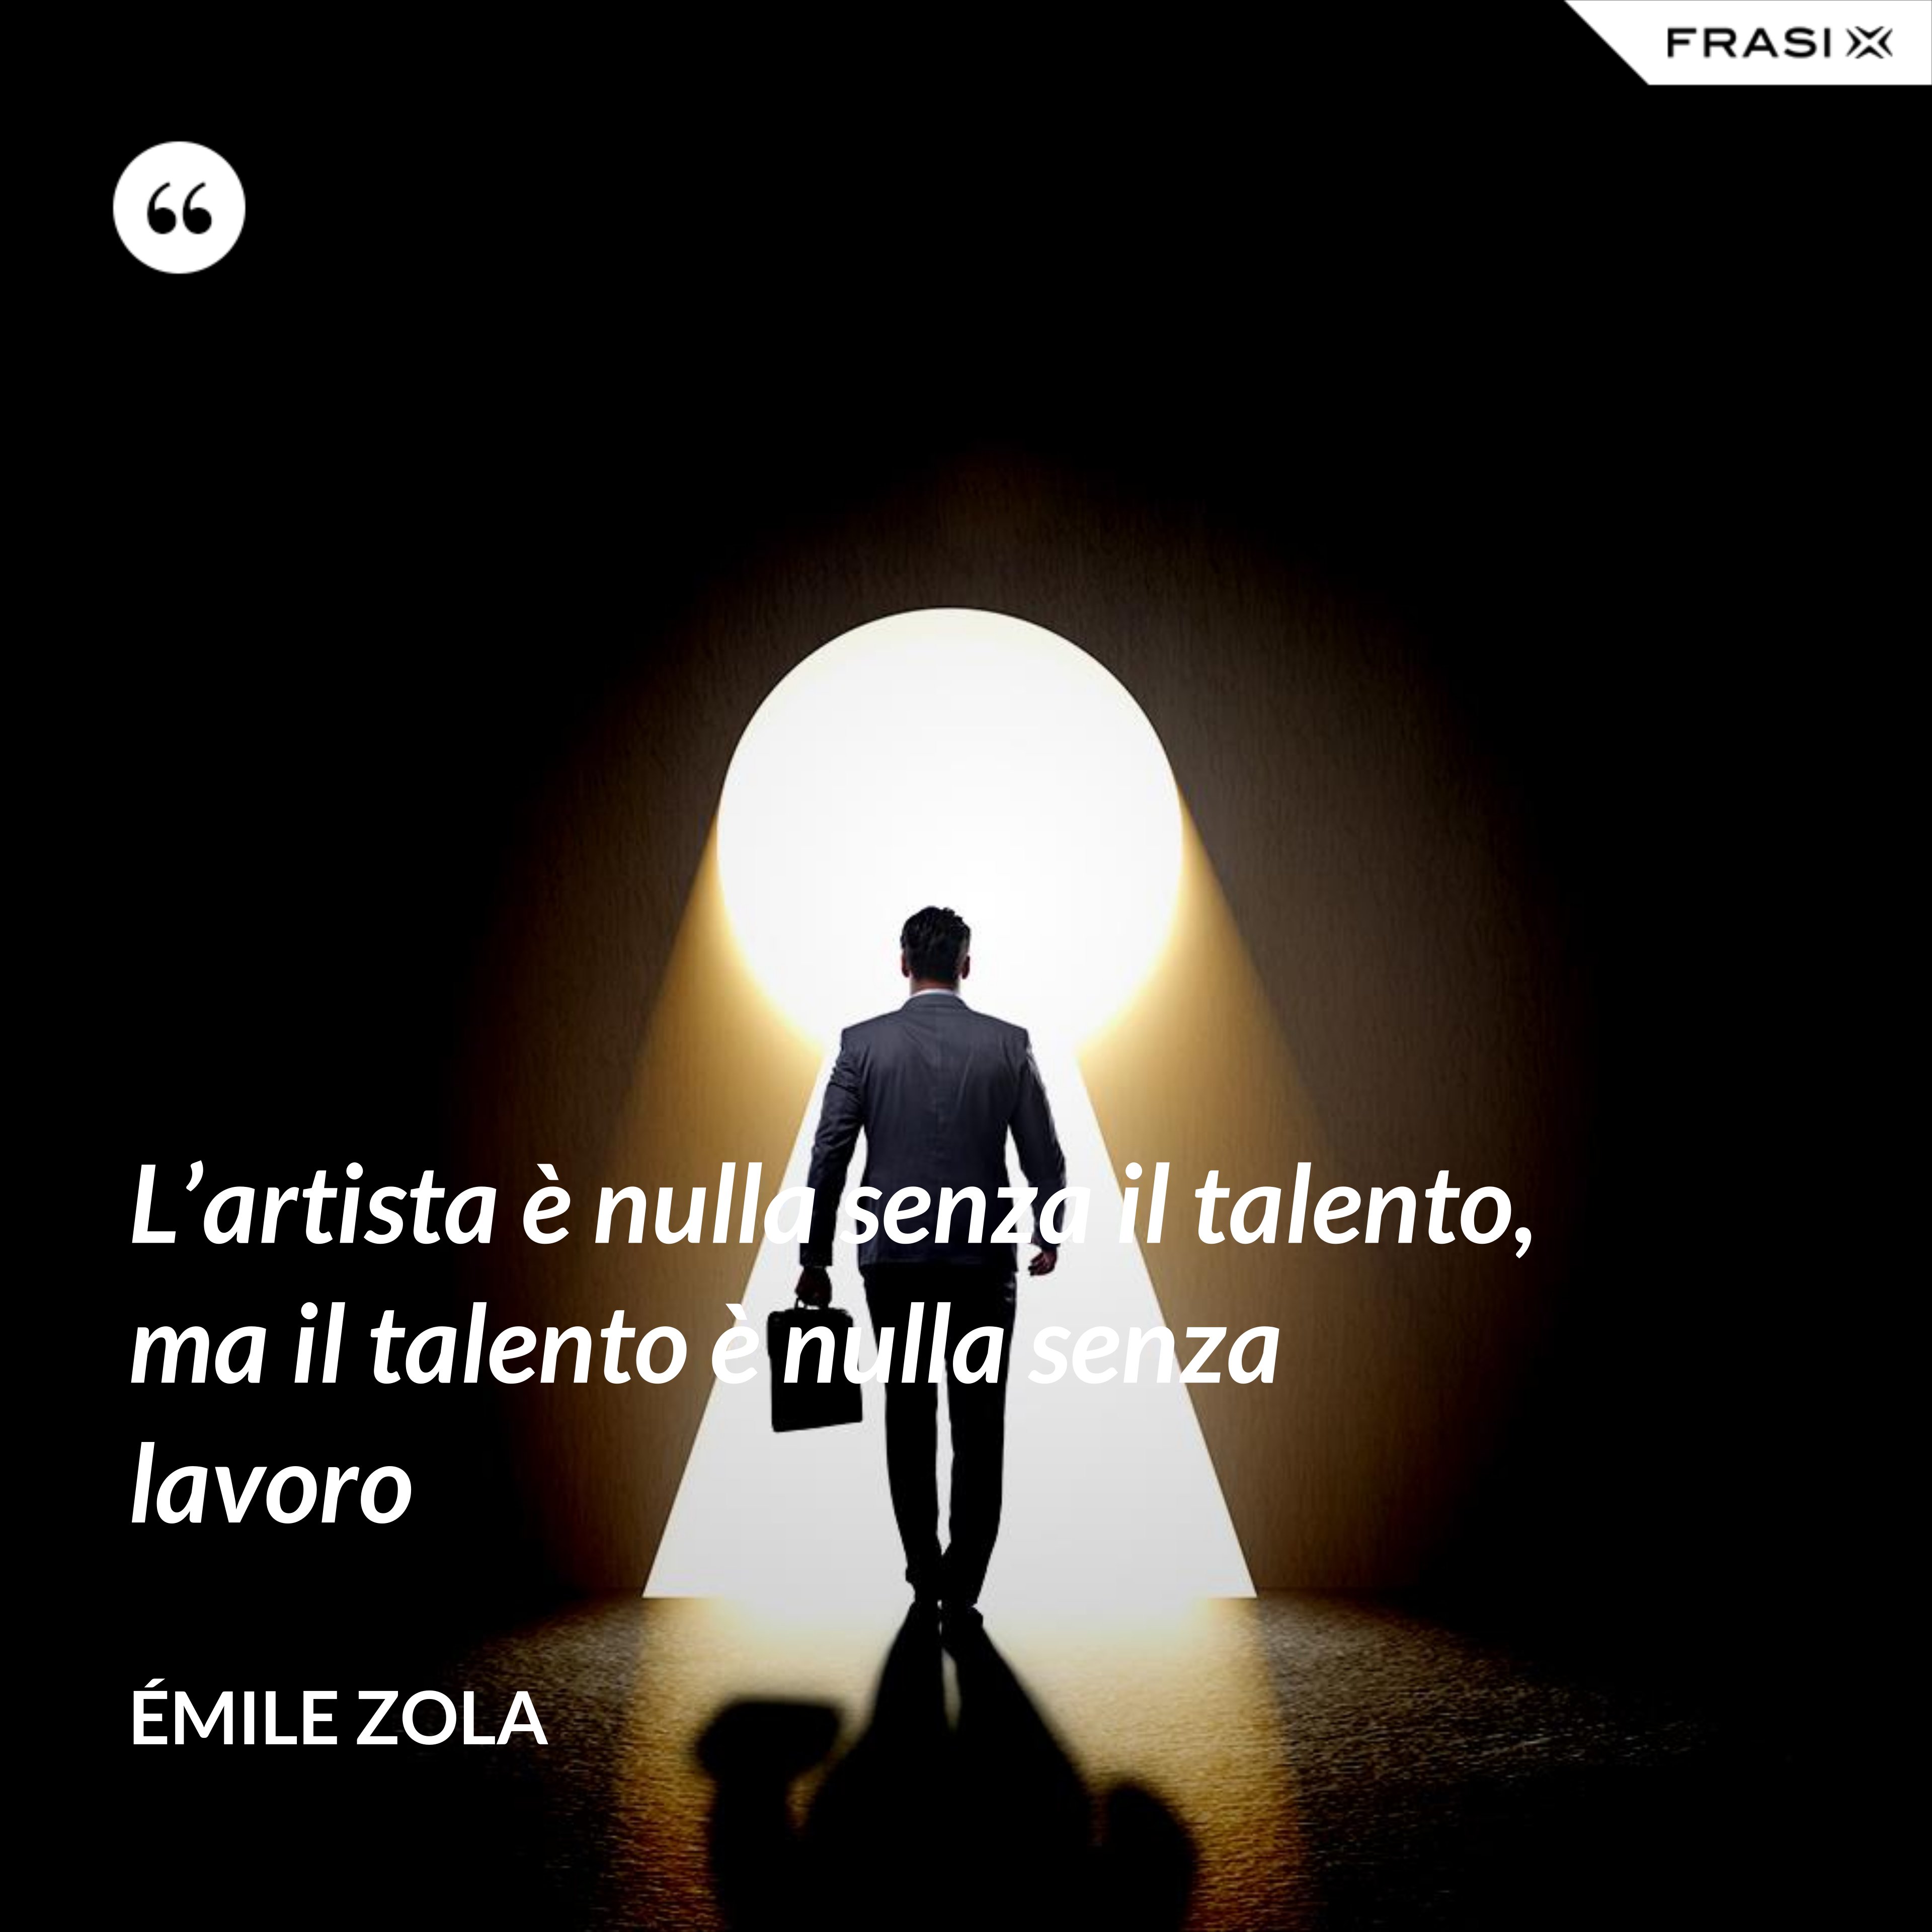 L’artista è nulla senza il talento, ma il talento è nulla senza lavoro - Émile Zola